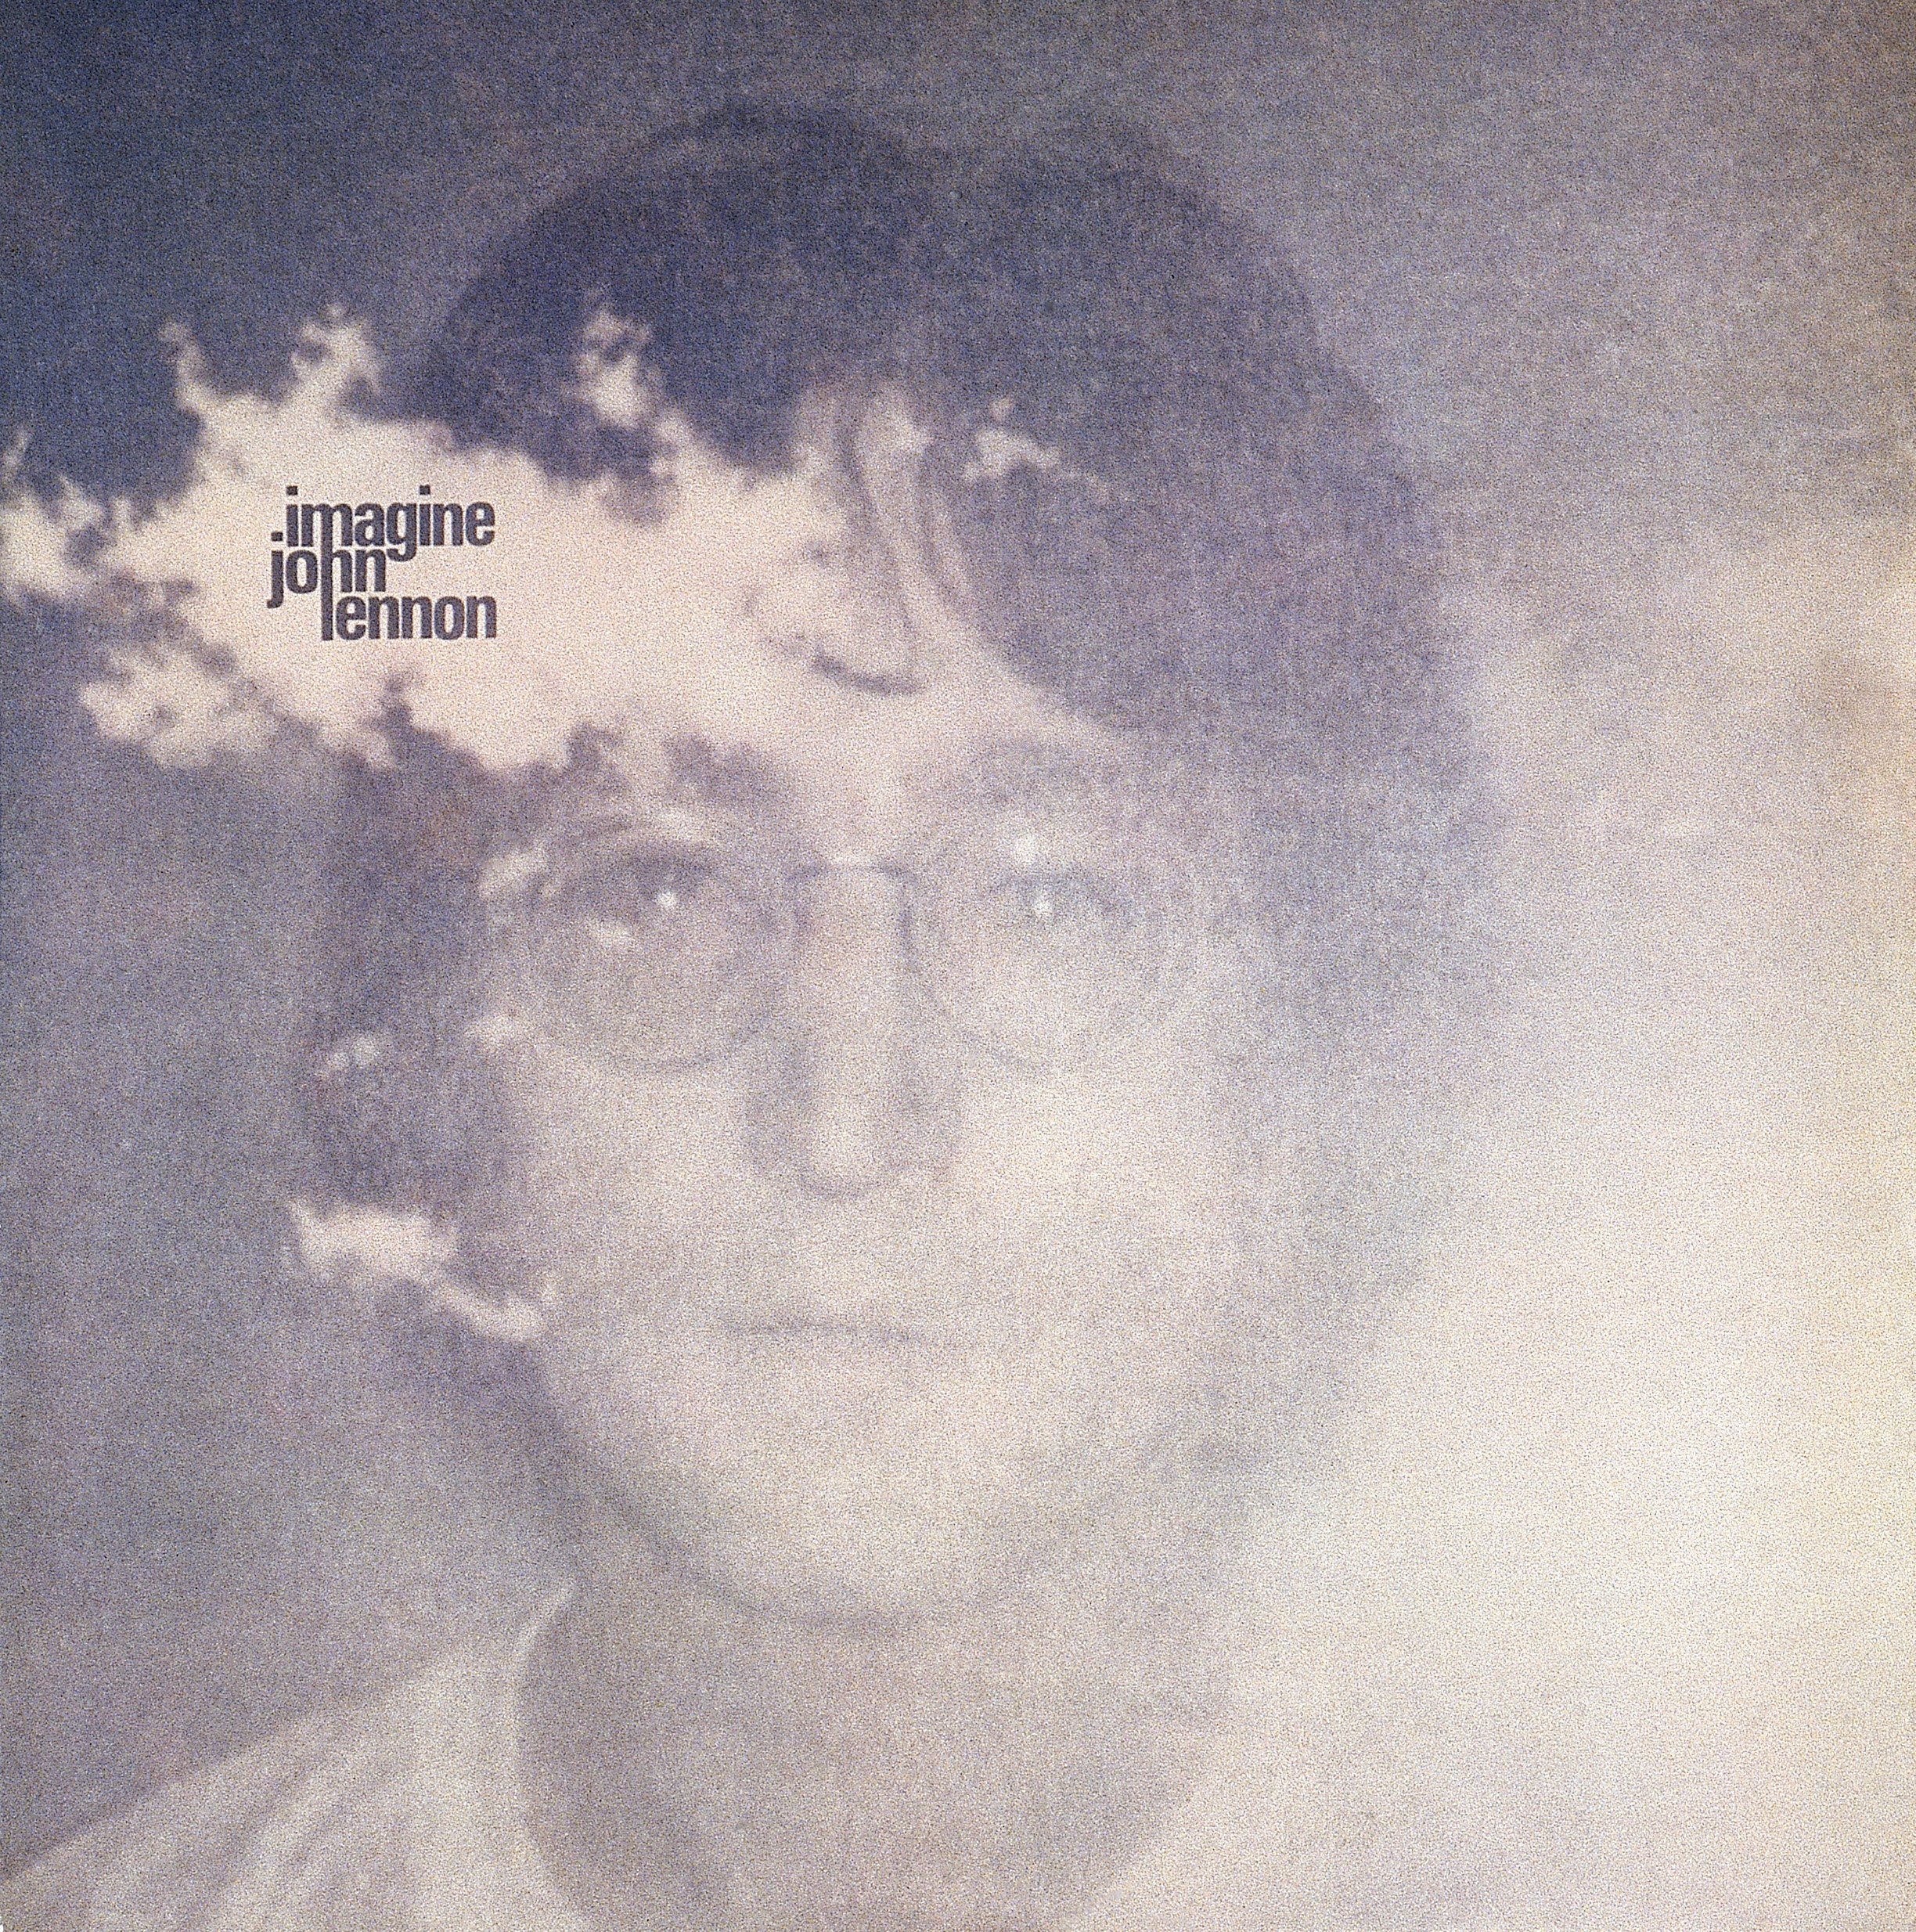 The cover of John Lennon's 1971 album, 'Imagine'